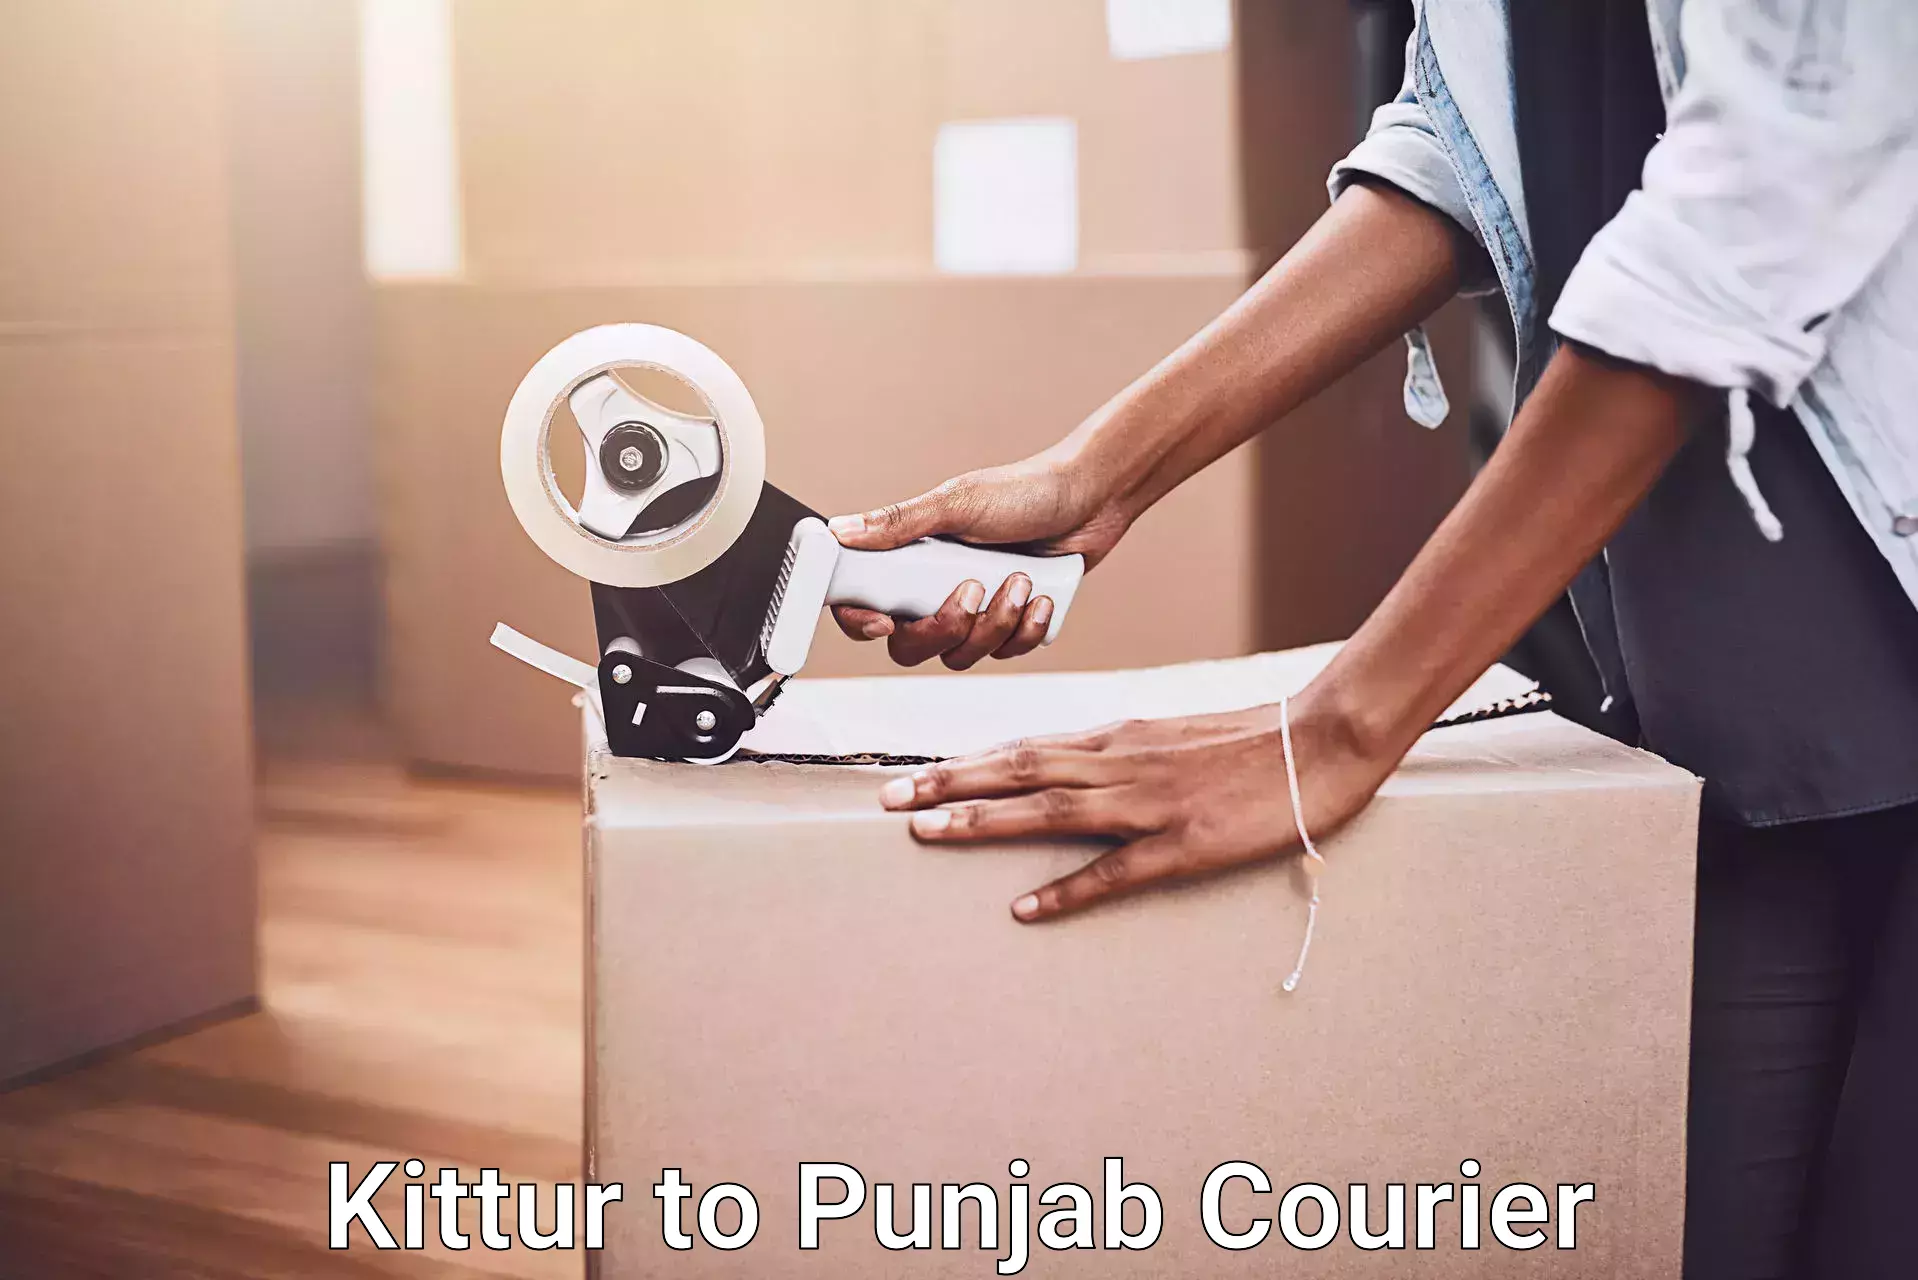 Nationwide furniture movers Kittur to Punjab